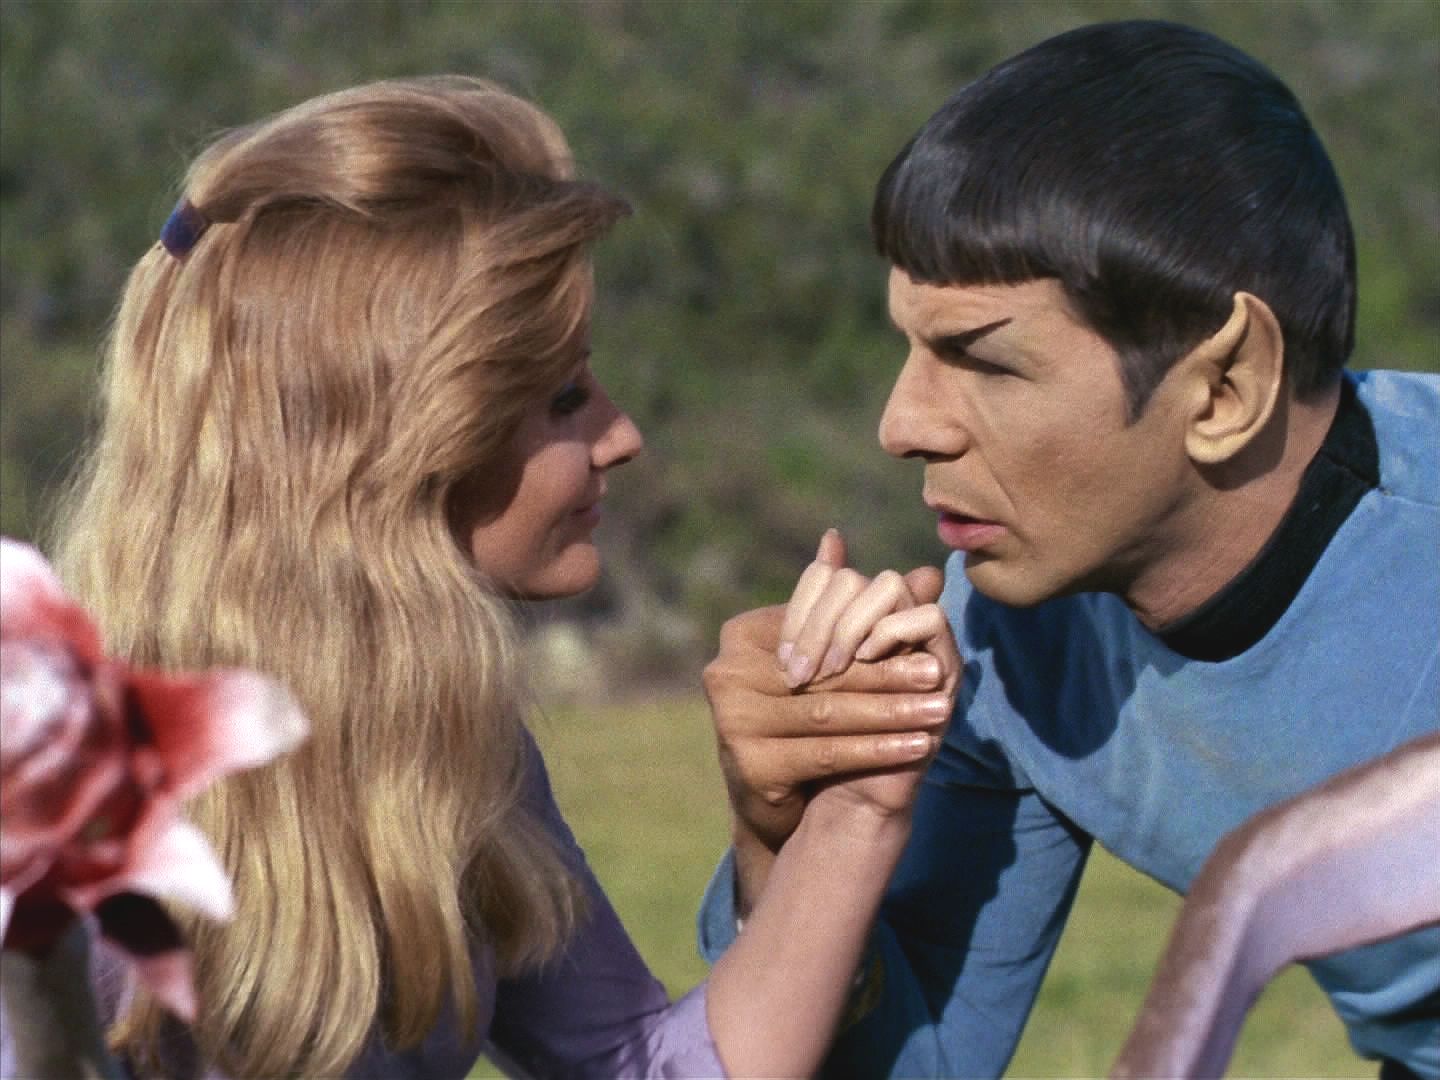 Spock pod vlivem spor projevuje své potlačené city. Bude si tyto chvíle pamatovat jako dobu, kdy se poprvé v životě cítil šťastný.